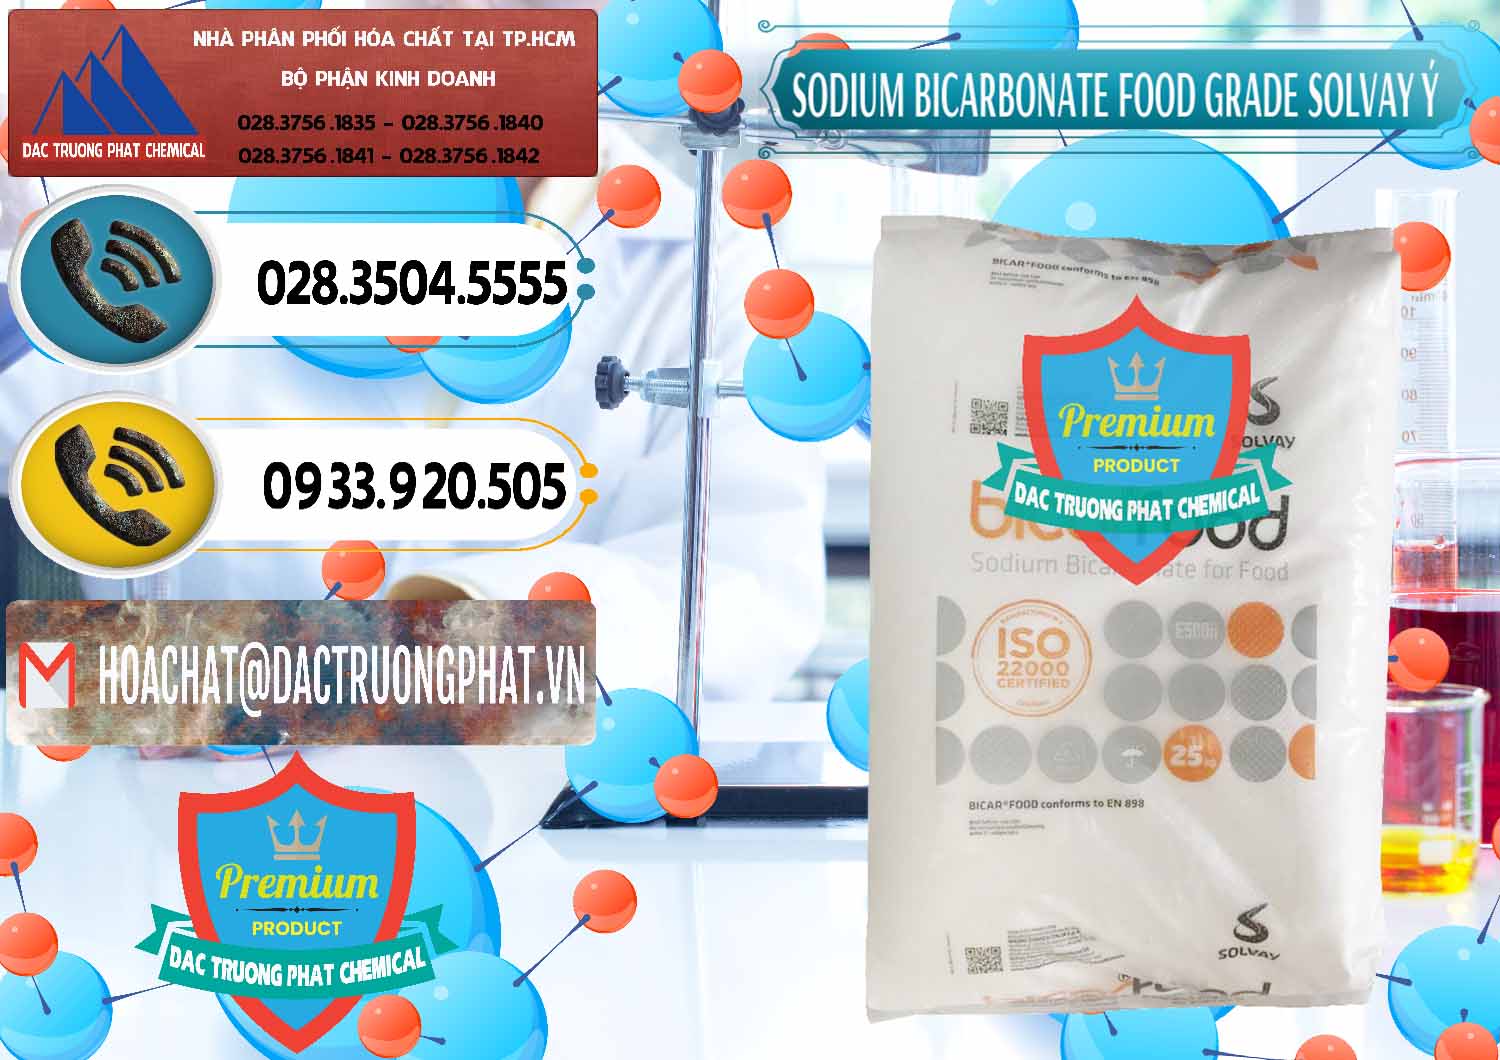 Bán - phân phối Sodium Bicarbonate – Bicar NaHCO3 Food Grade Solvay Ý Italy - 0220 - Chuyên cung cấp và bán hóa chất tại TP.HCM - hoachatdetnhuom.vn